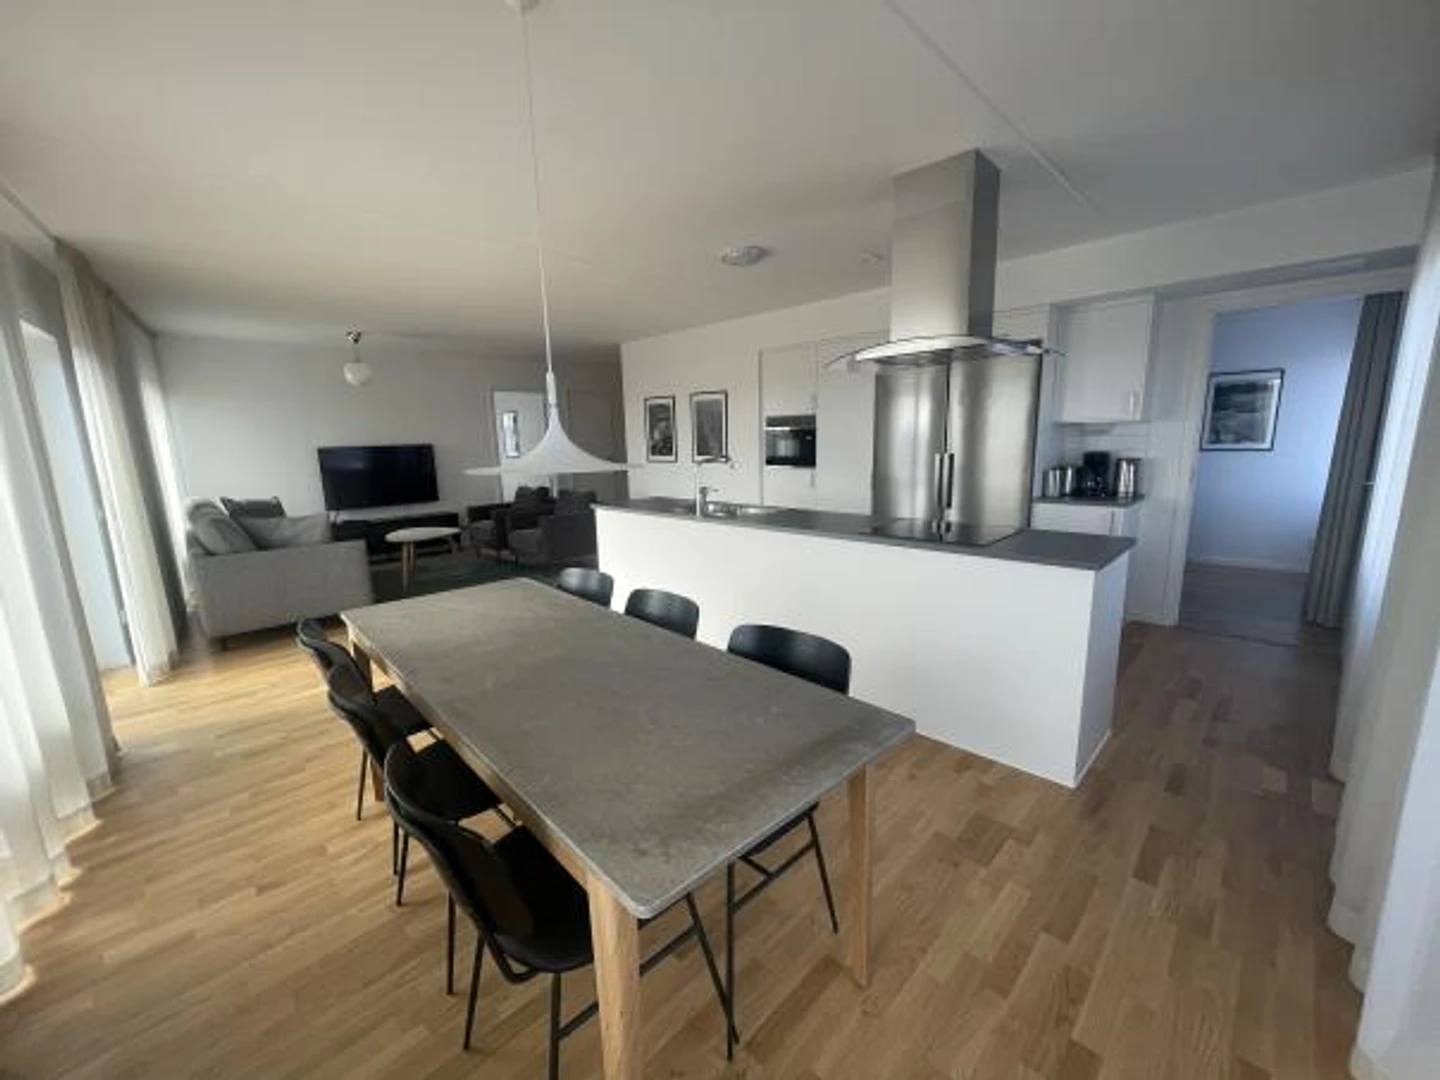 W pełni umeblowane mieszkanie w Malmö